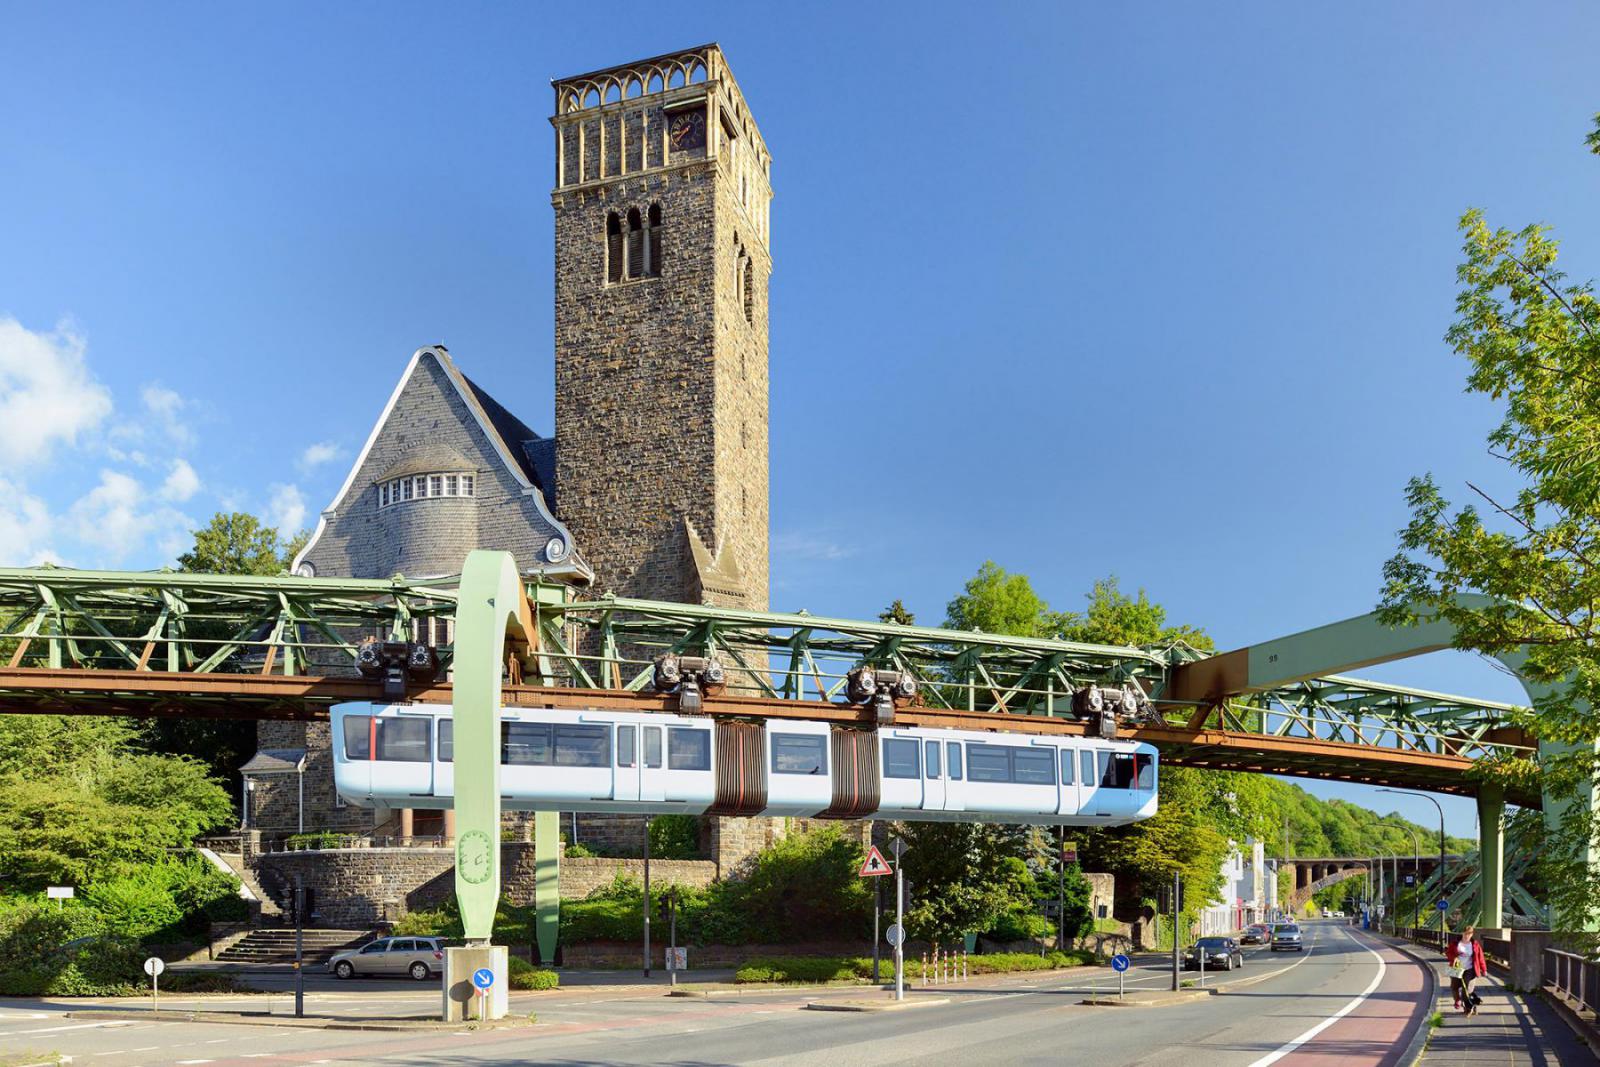 De monorail in Wuppertal is een unieke vorm van openbaar vervoer | DZT / Francesco Carovillano